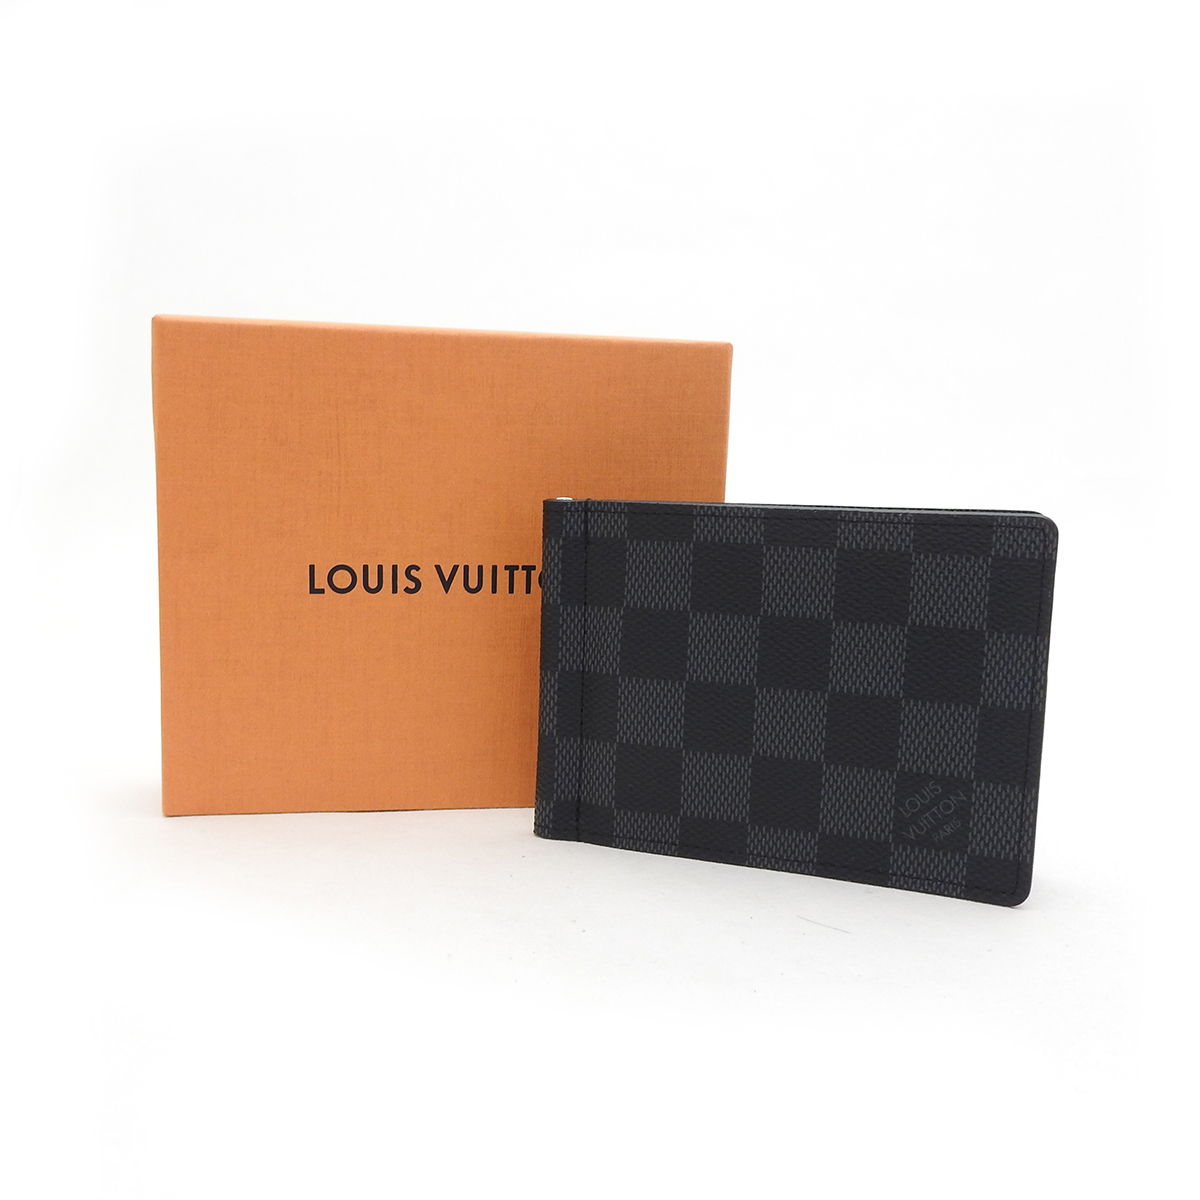 ルイヴィトン(Louis Vuitton) ポルトフォイユ・パンス N61000 SAランク ブラック